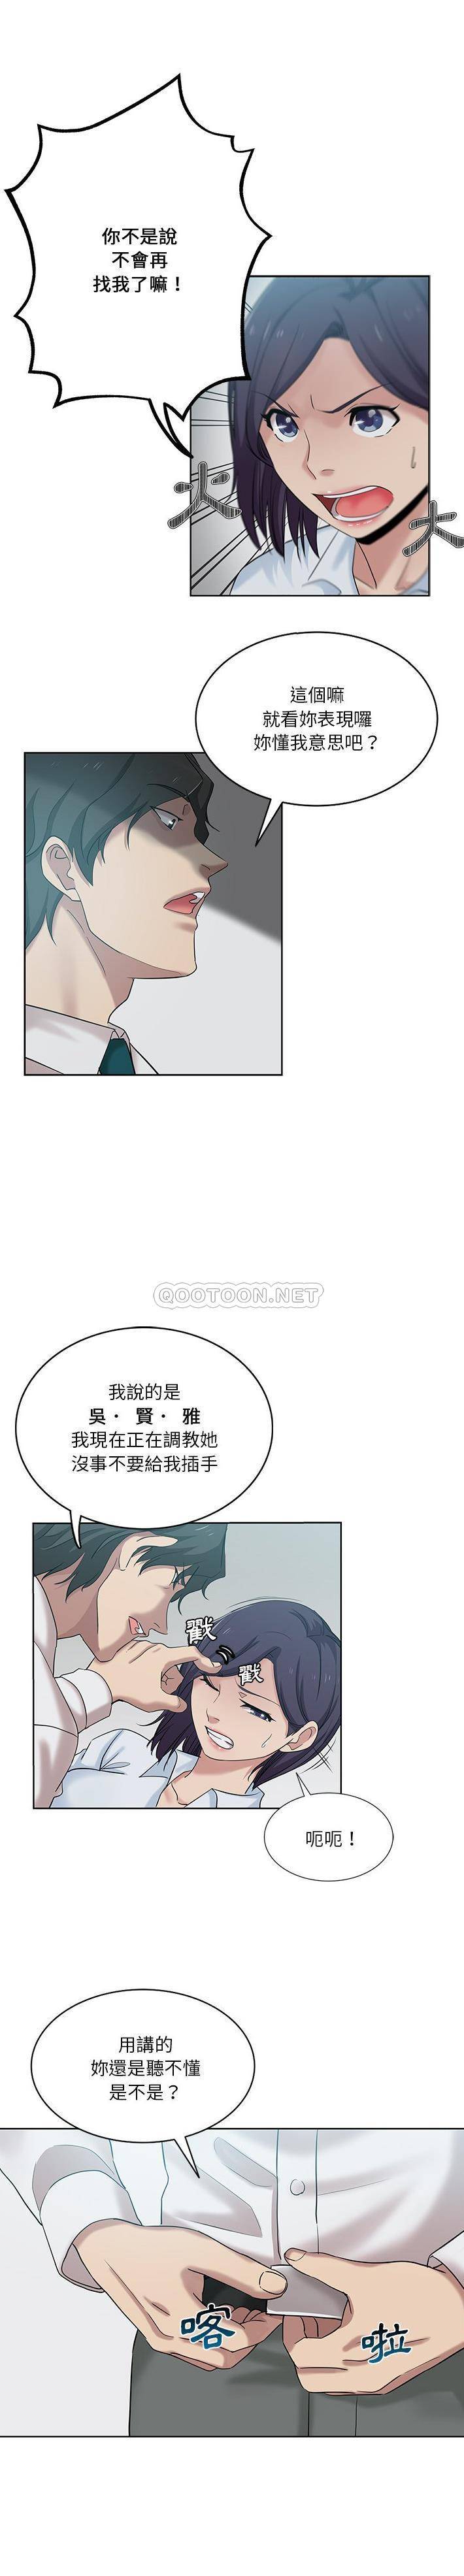 韩国污漫画 危險純友誼 第27话 1